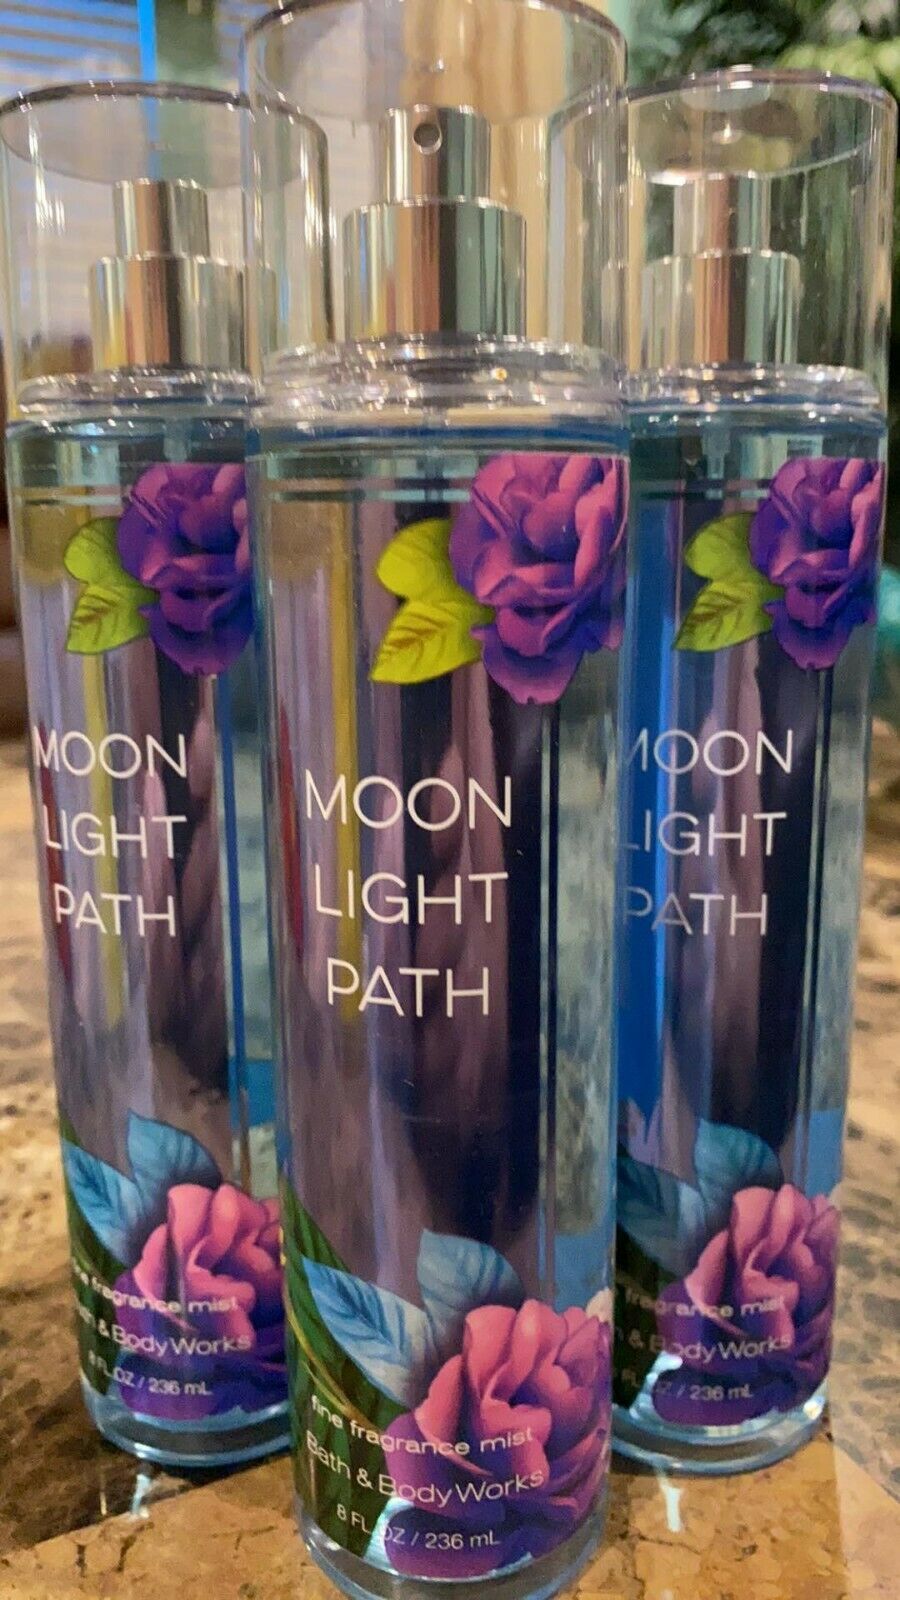 3 Bath & Body Works Moonlight Path Fine Fragrance Mist 8 Fl Oz